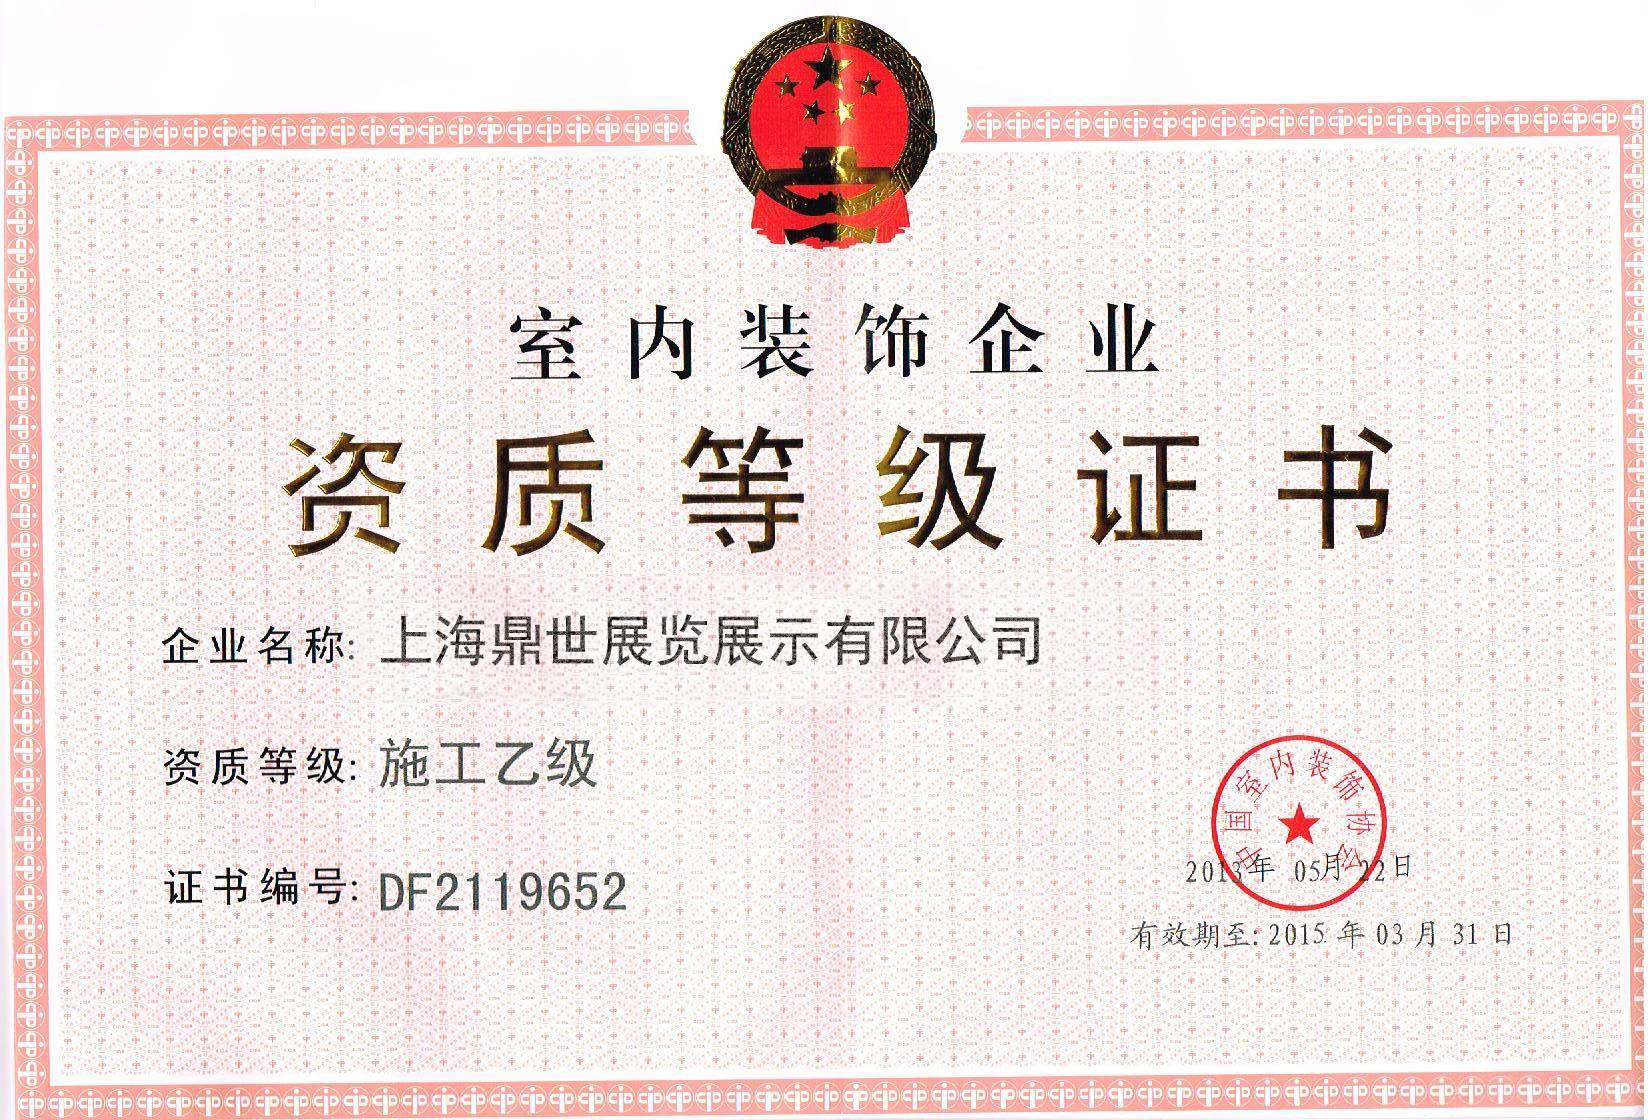 上海灵闪展柜厂获得奖项证书